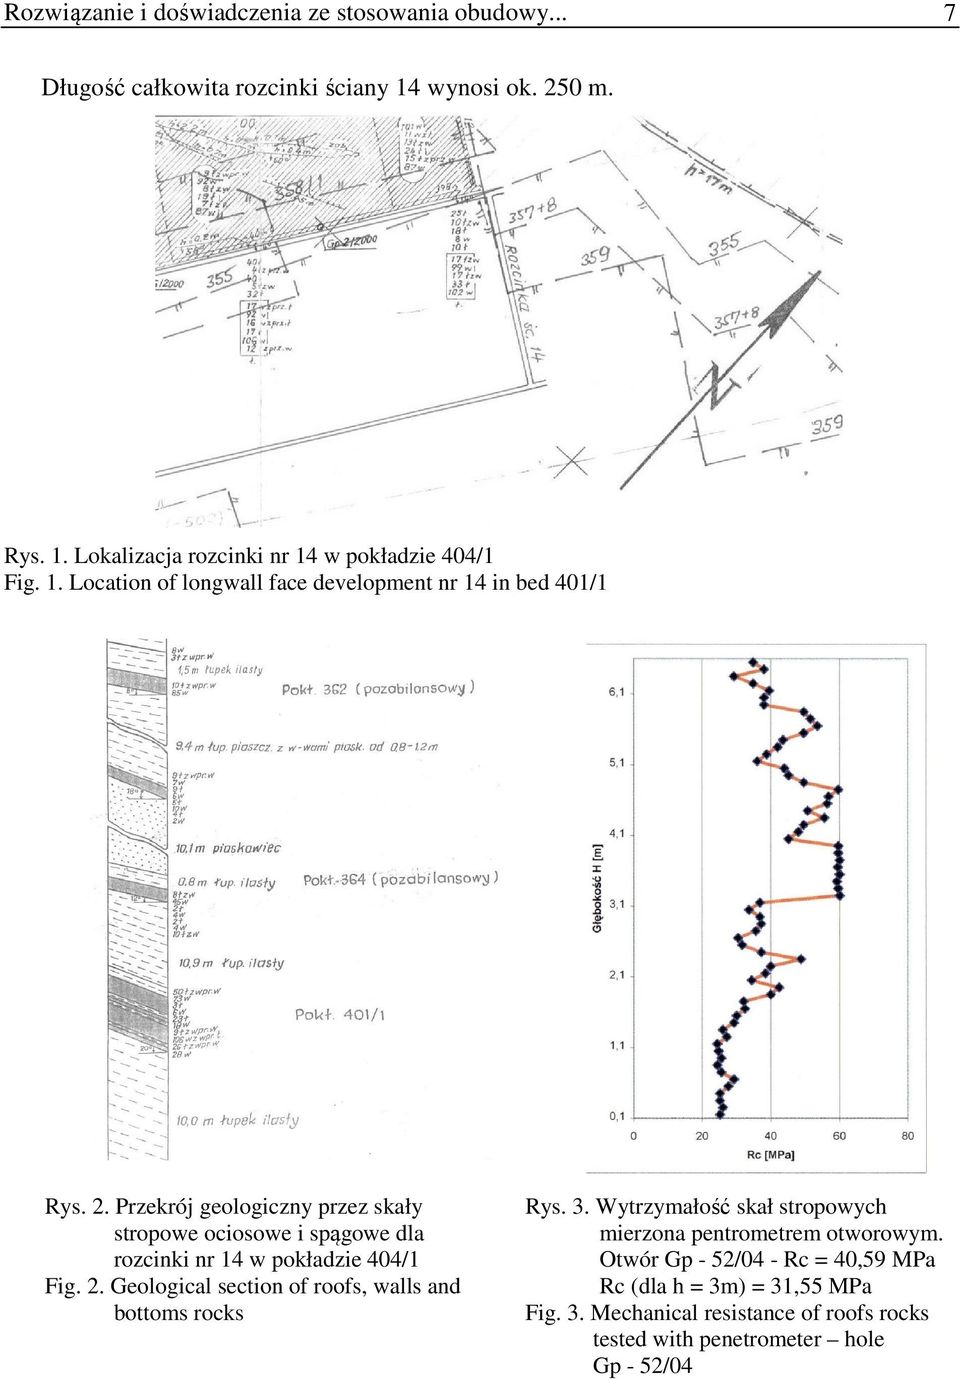 Przekrój geologiczny przez skały stropowe ociosowe i spągowe dla rozcinki nr 14 w pokładzie 404/1 Fig. 2.